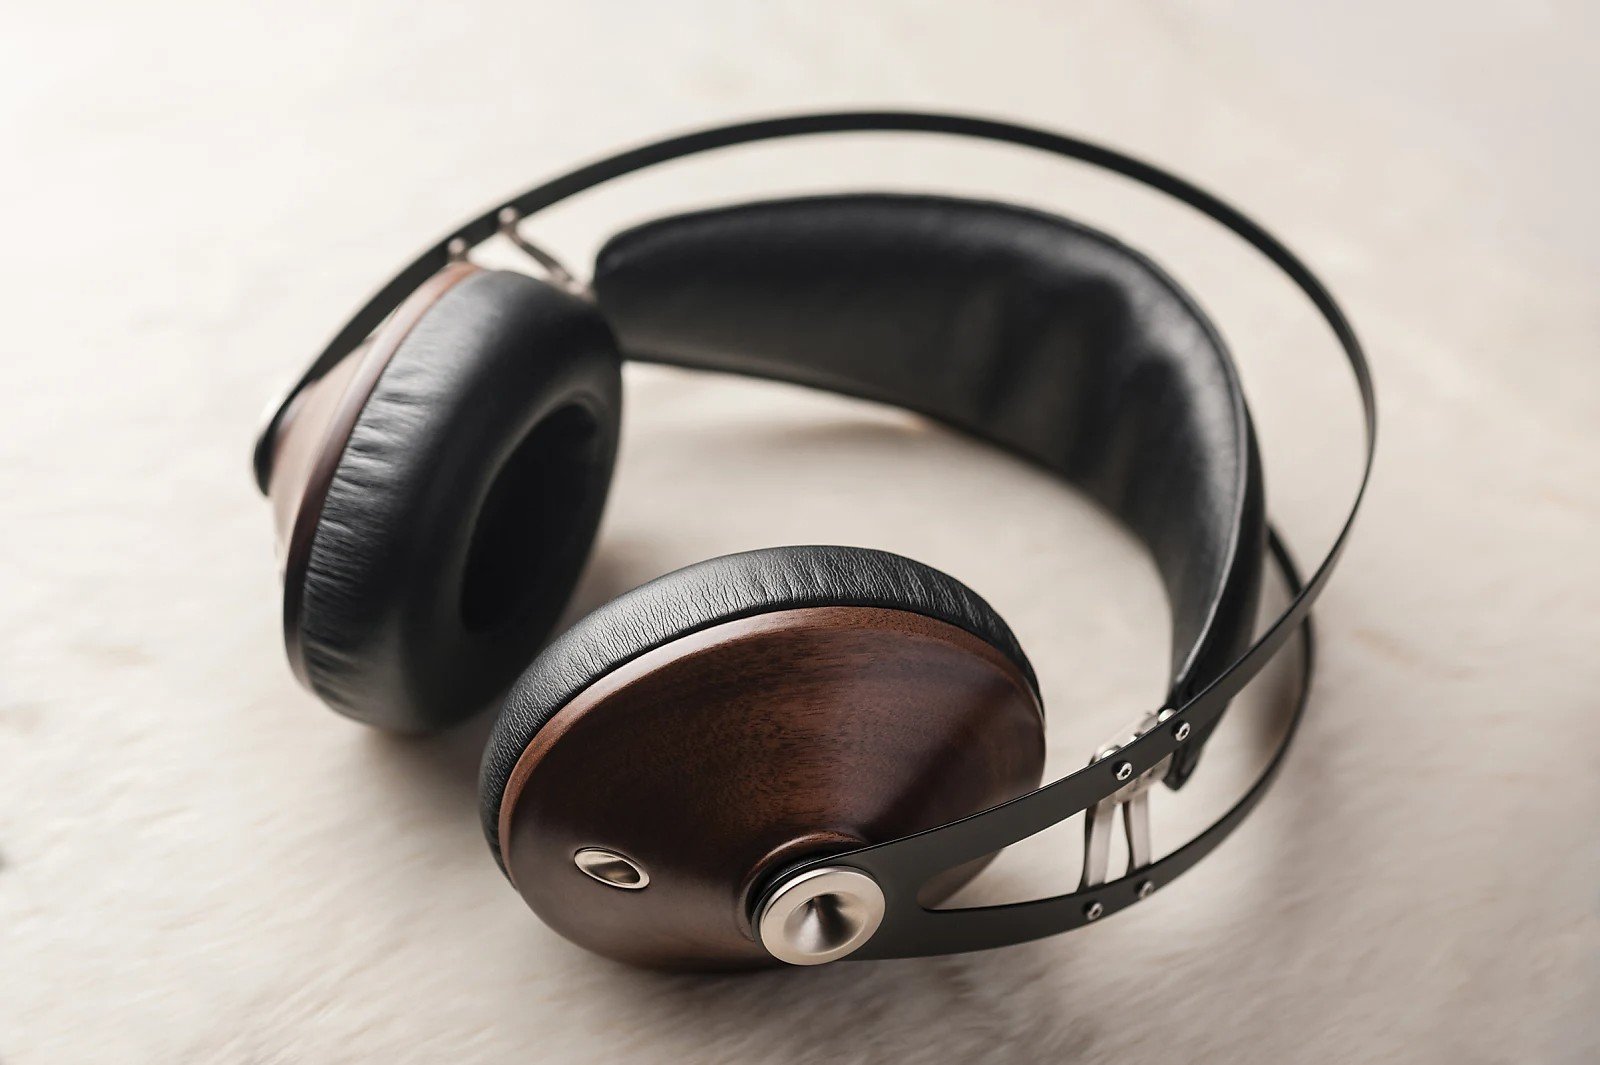 Meze 99 Classics Closed Over-Ear Headphones